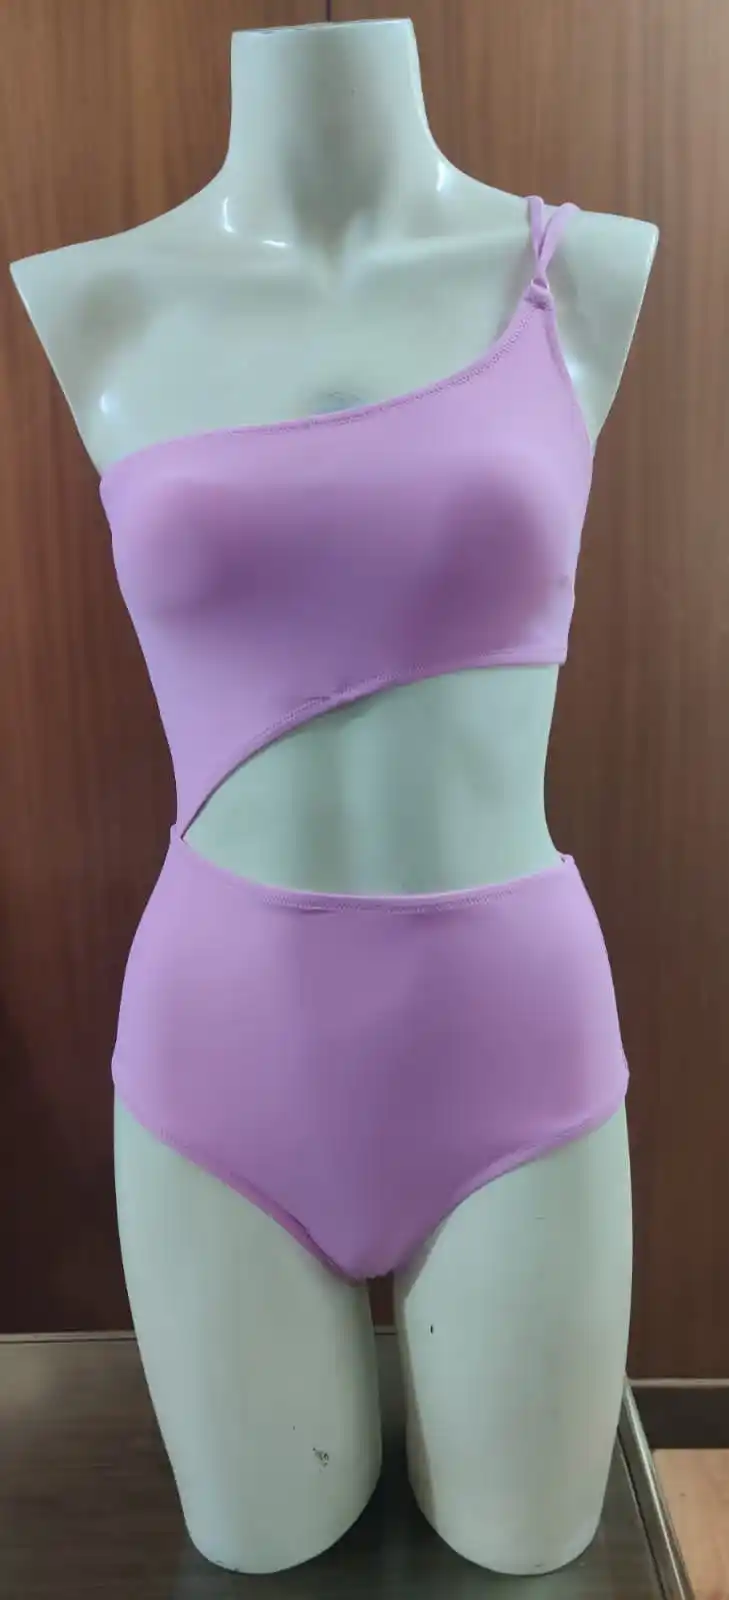 Monokini sexi para mujer fabricado en tejido sostenible VITA Beach Wear Fabricante Bañadores